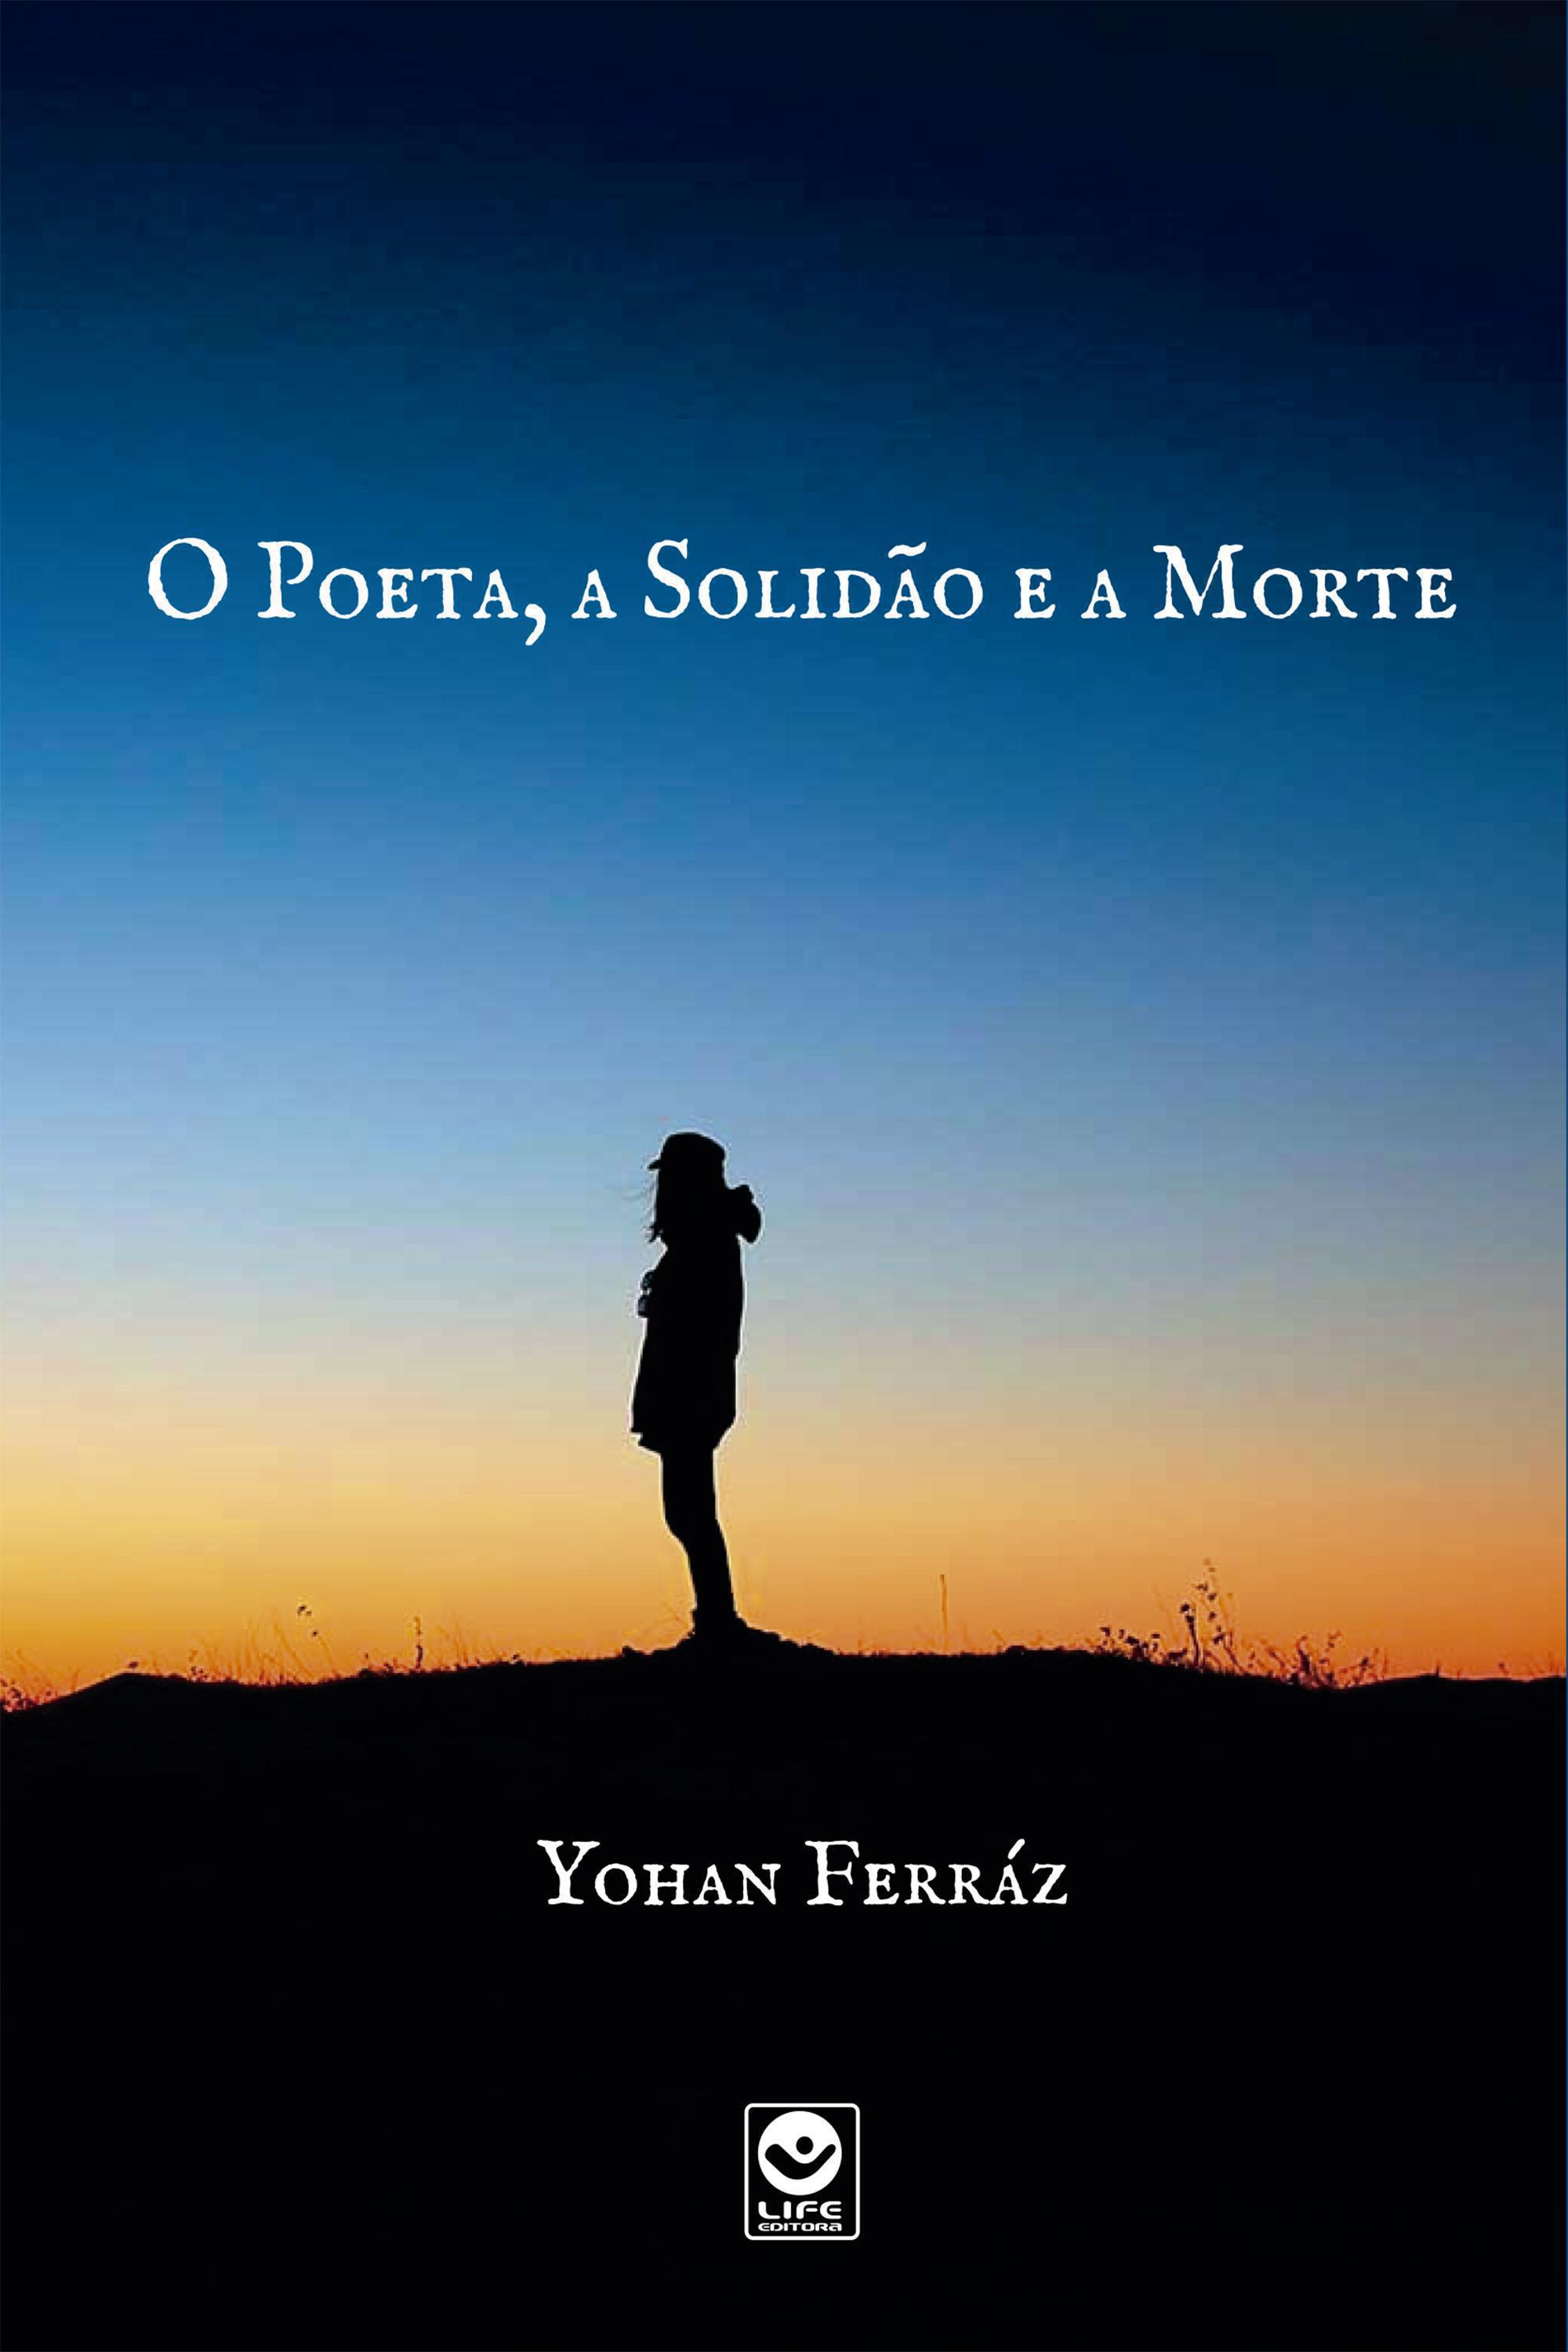 O poeta, a solidão e a morte